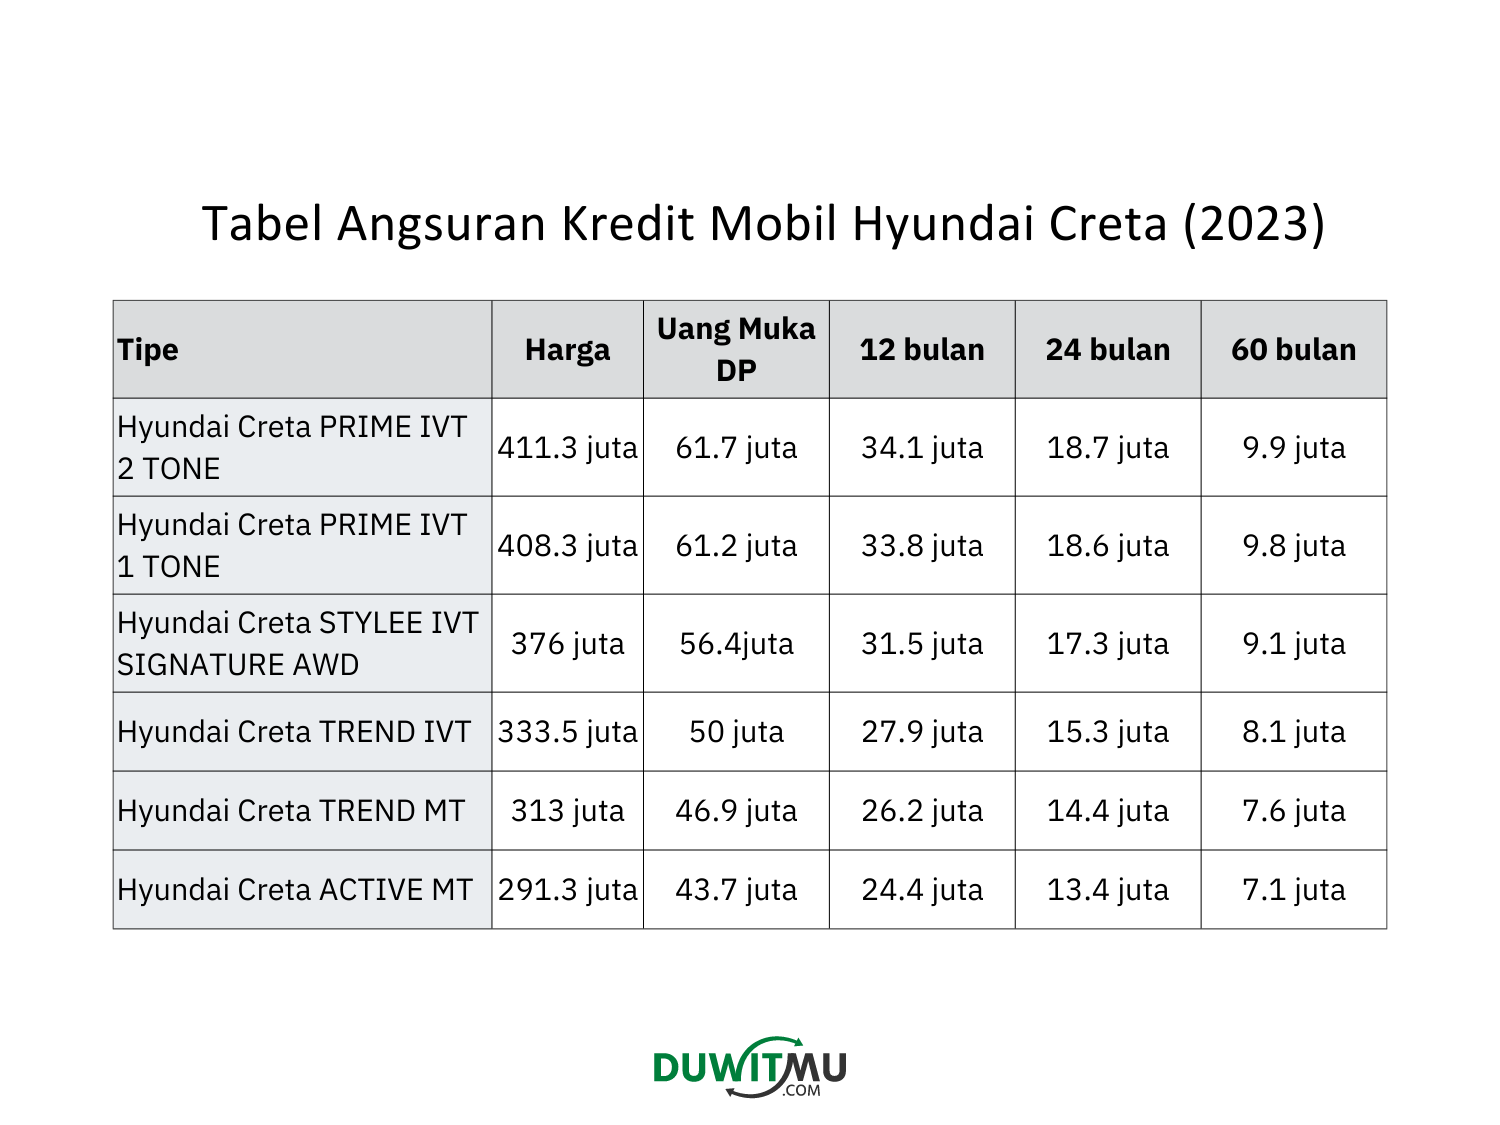 Tabel Angsuran Hyundai Creta, Harga, Uang Muka DP 